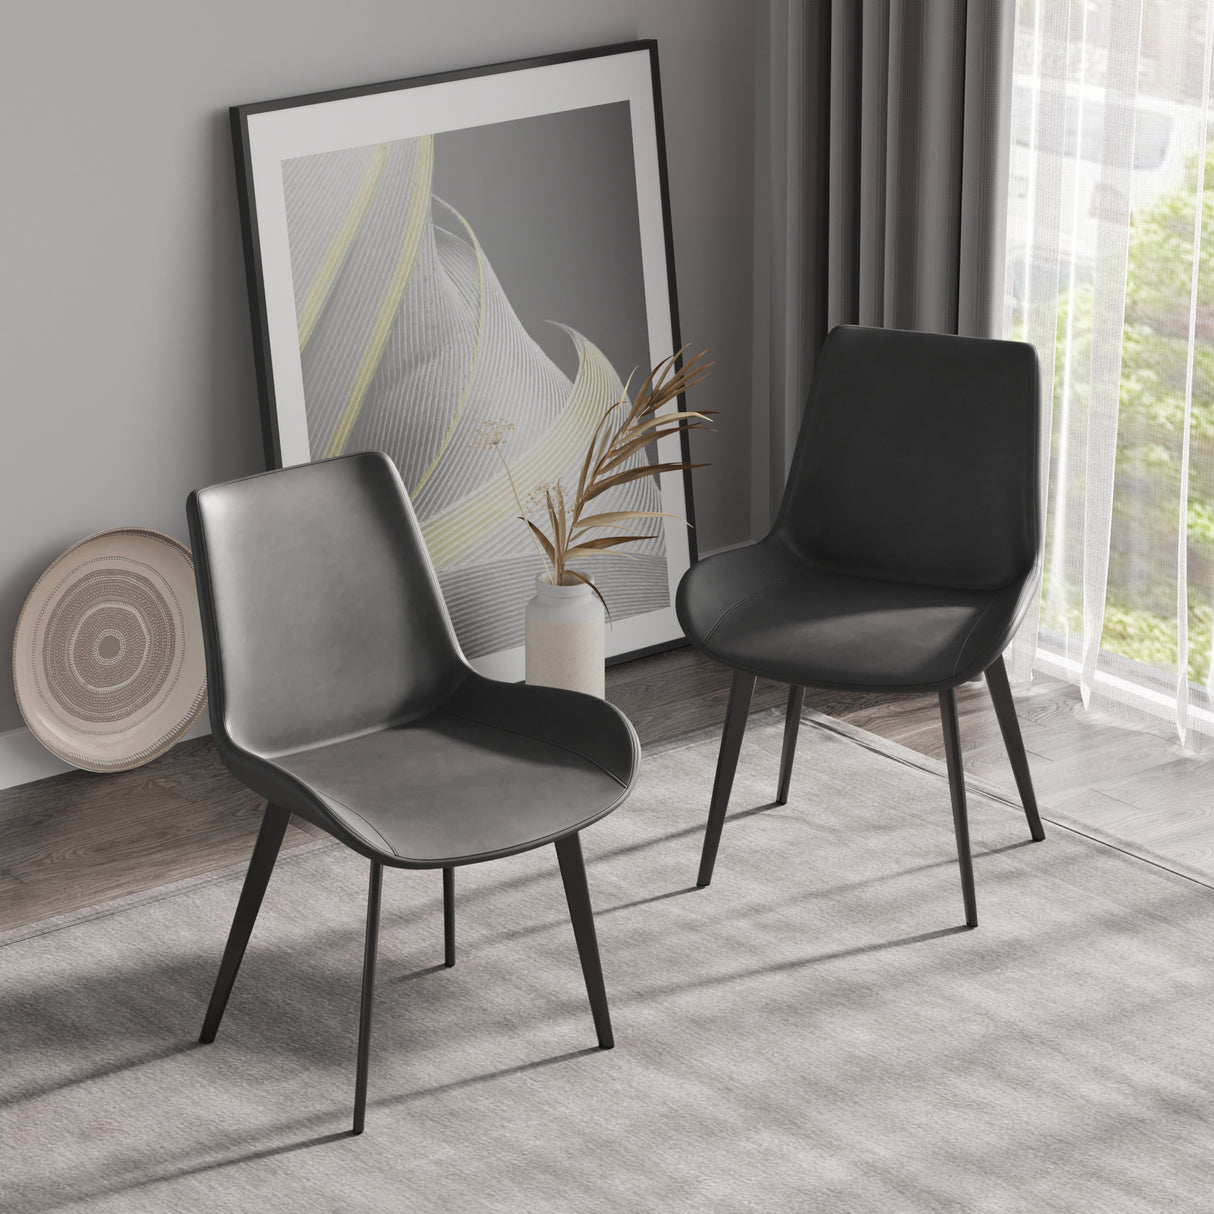 Modern Dining Chair Living Room Black Metal Leg Dining Chair-Grey-4pcs/ctn - Home Elegance USA